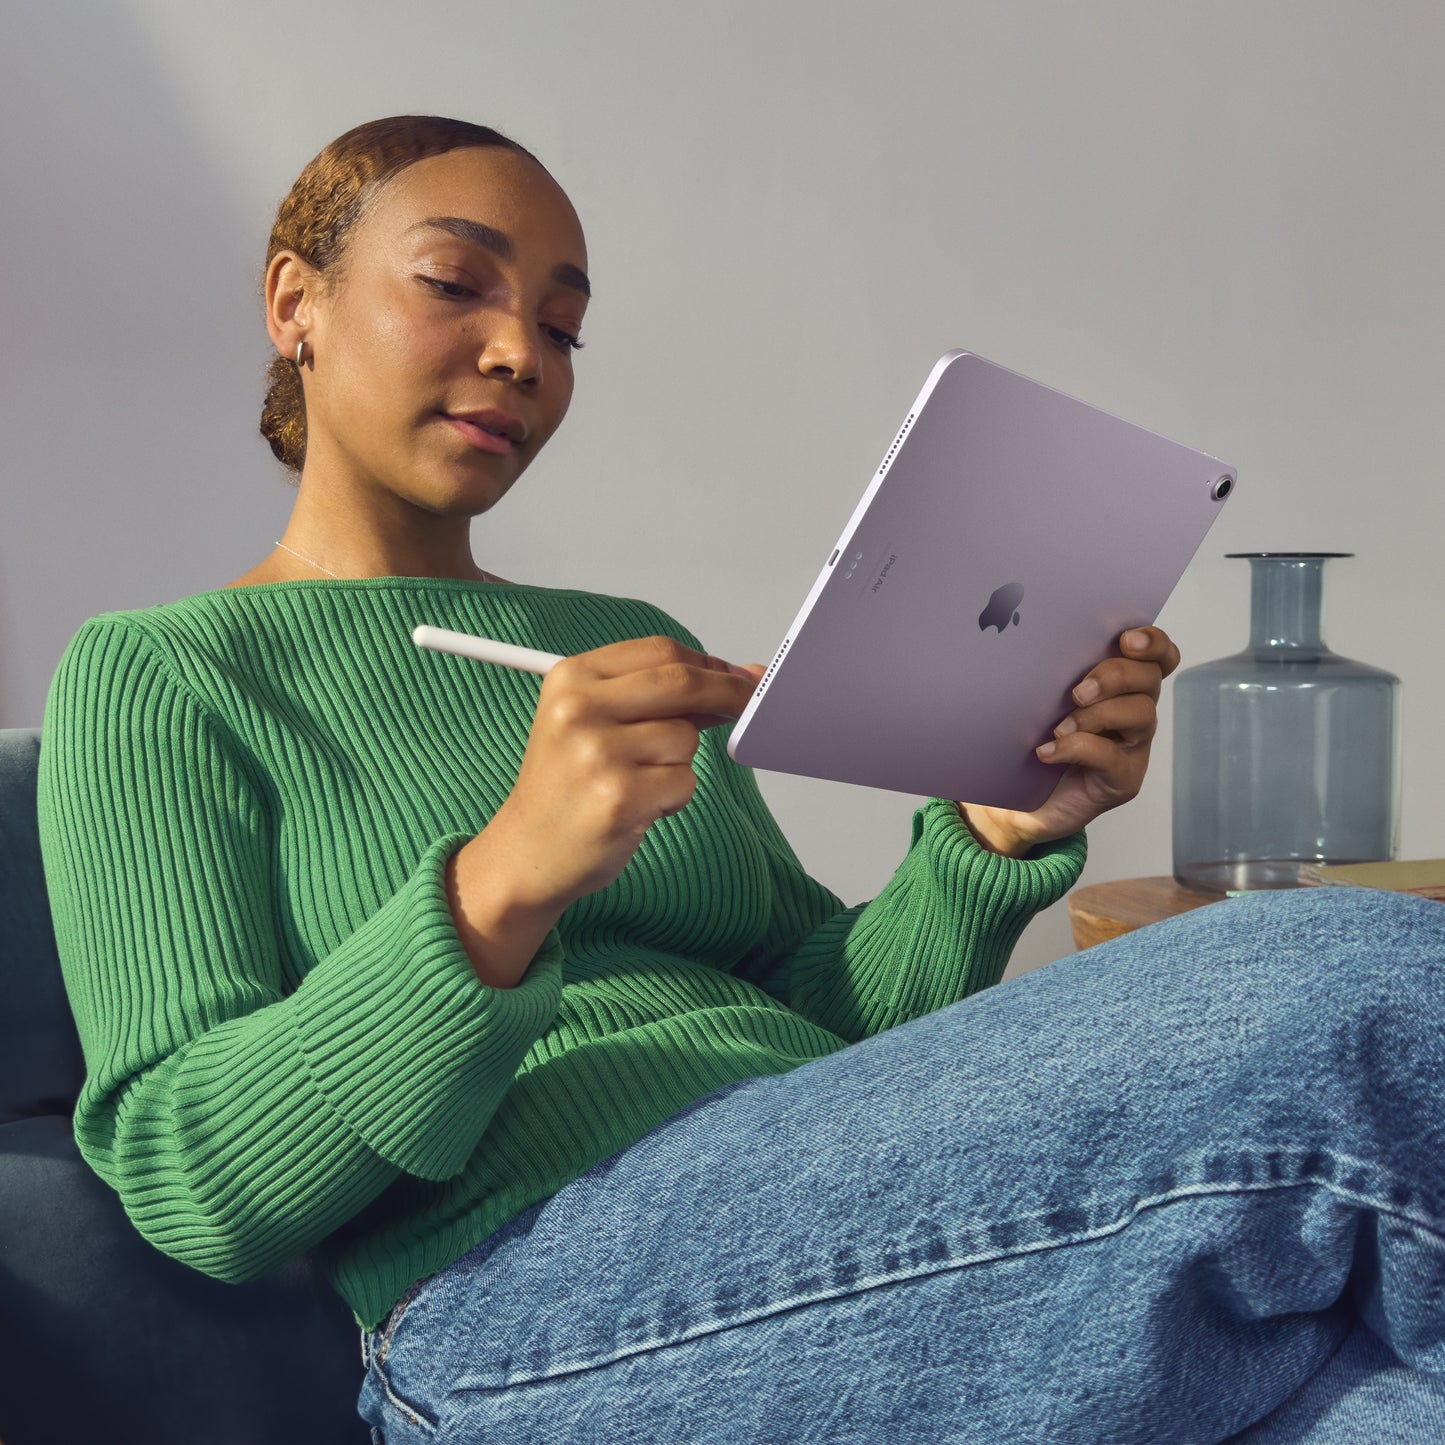 Apple 11-in iPad Air (M2) Wi-Fi 128GB - Purple - MUWF3LL/A (May 2024)